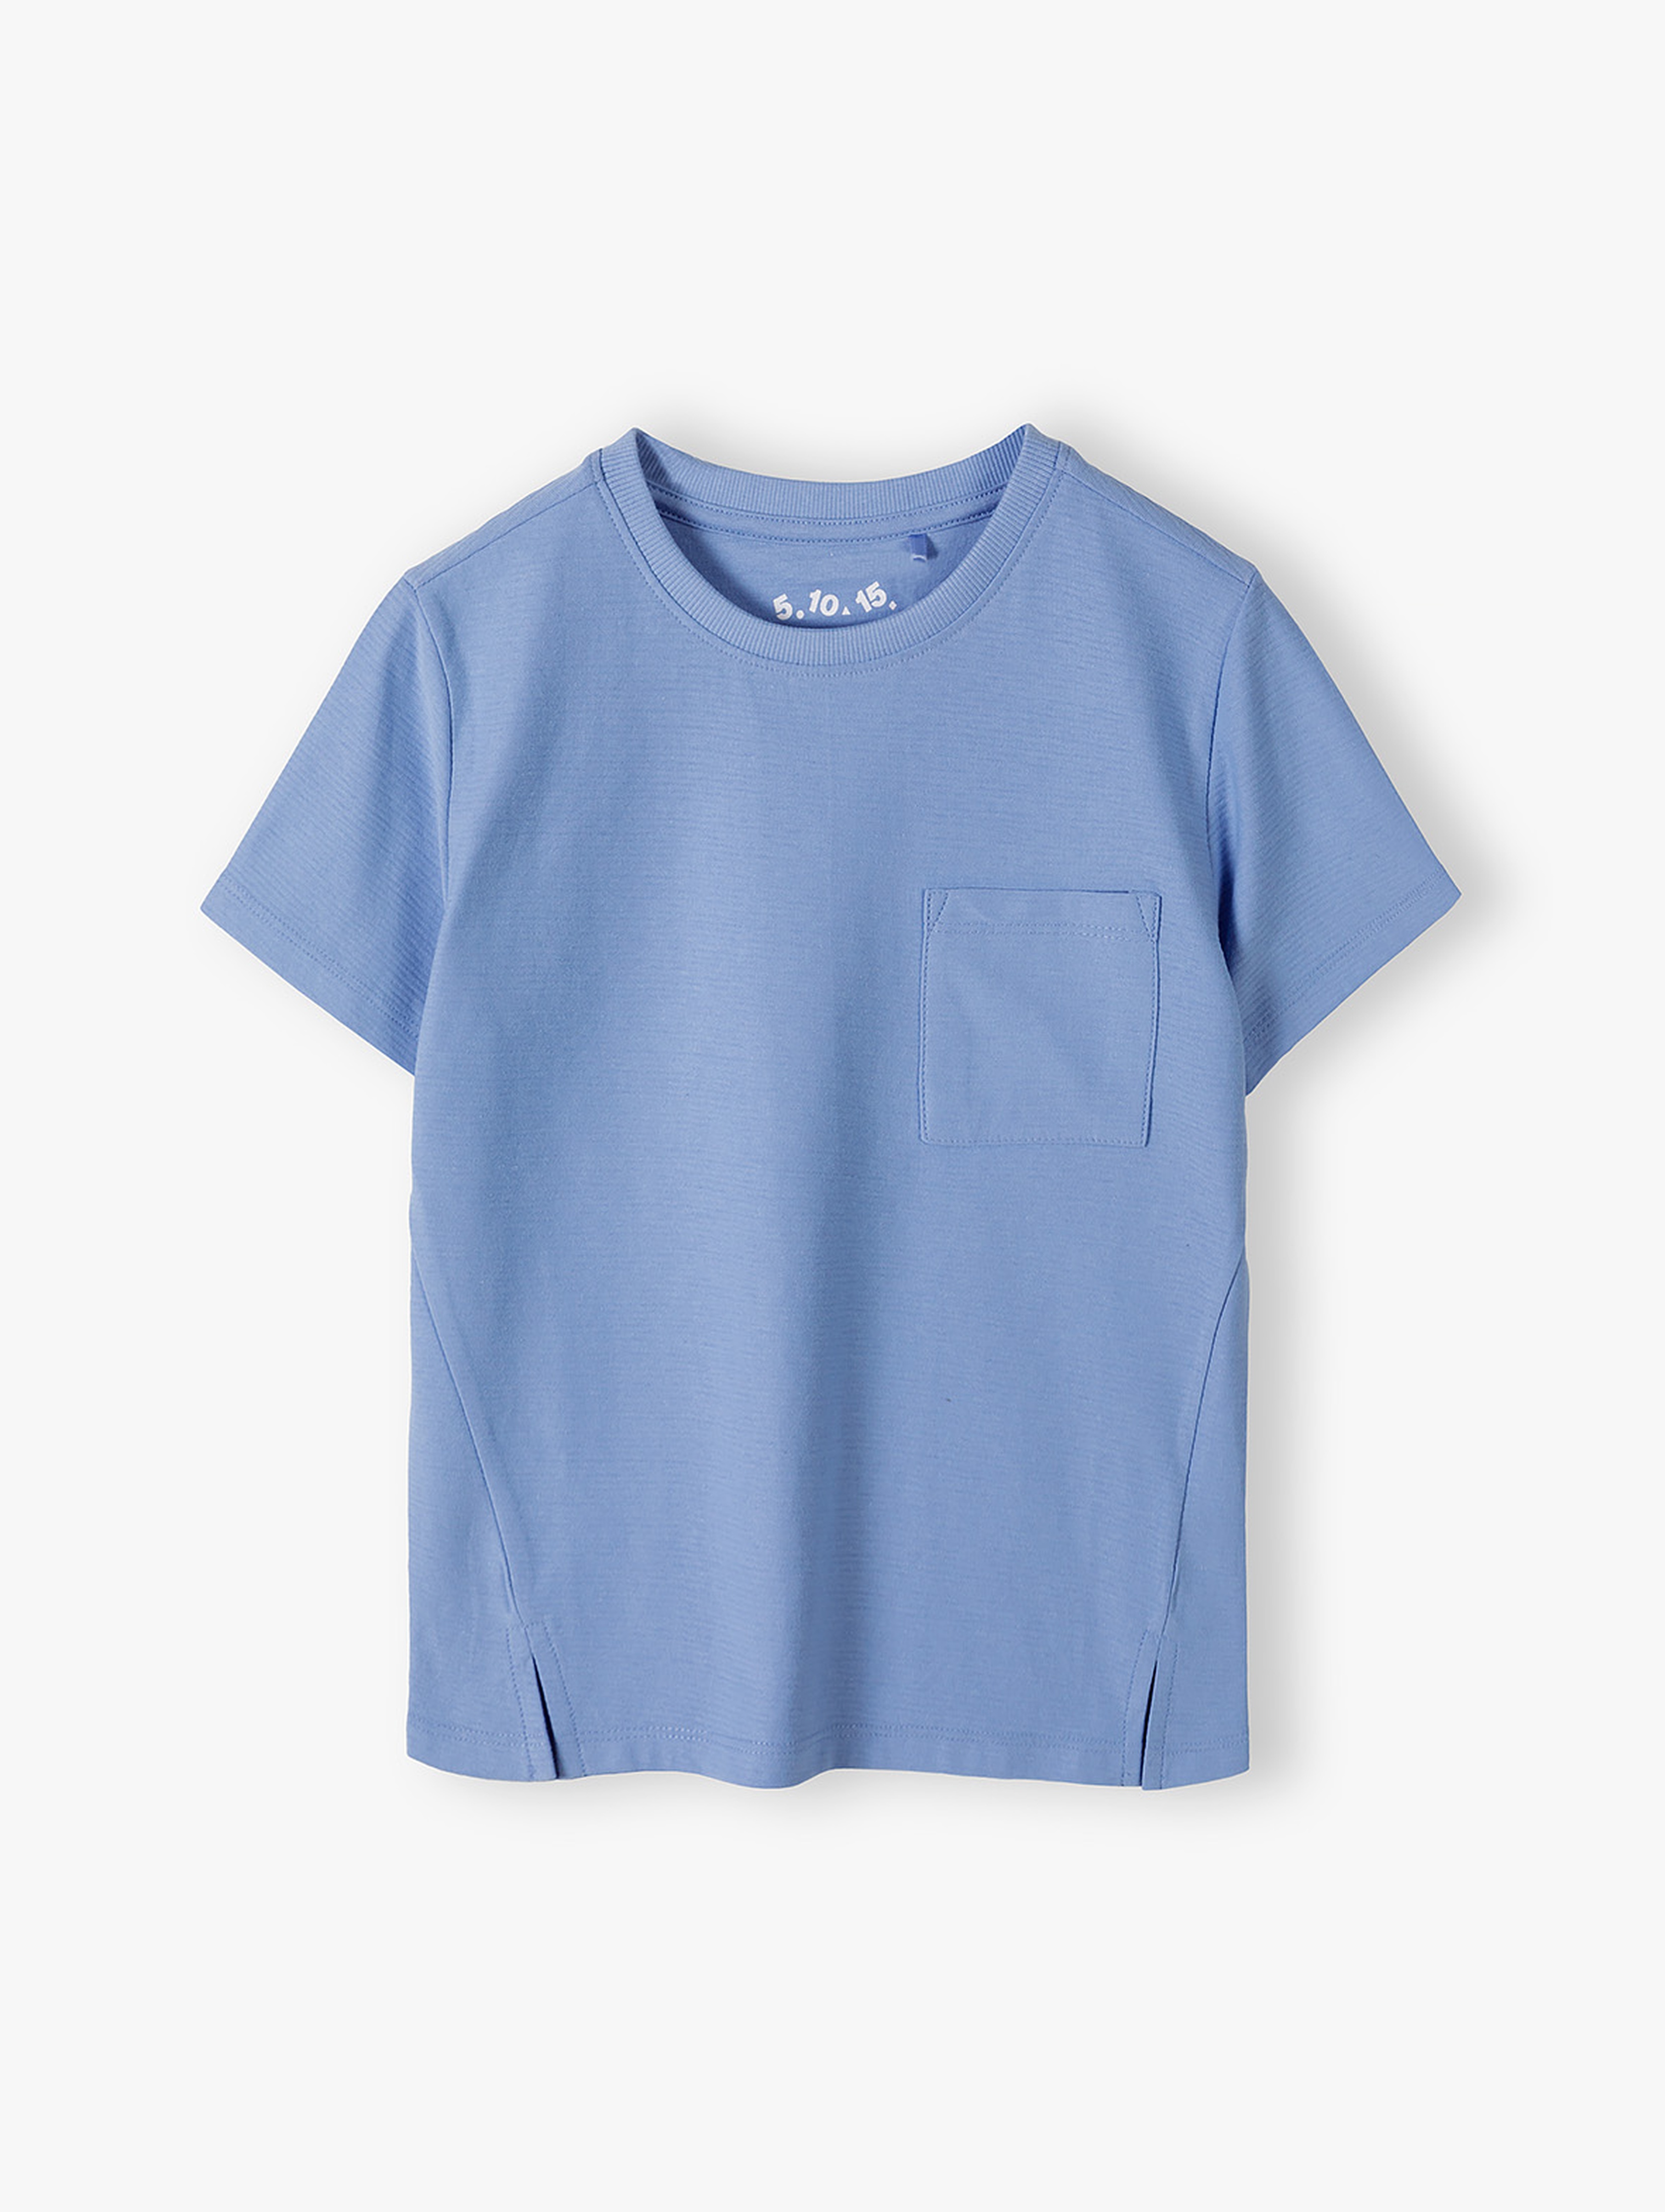 Dzianinowy t-shirt z kieszonką - niebieski - 5.10.15.